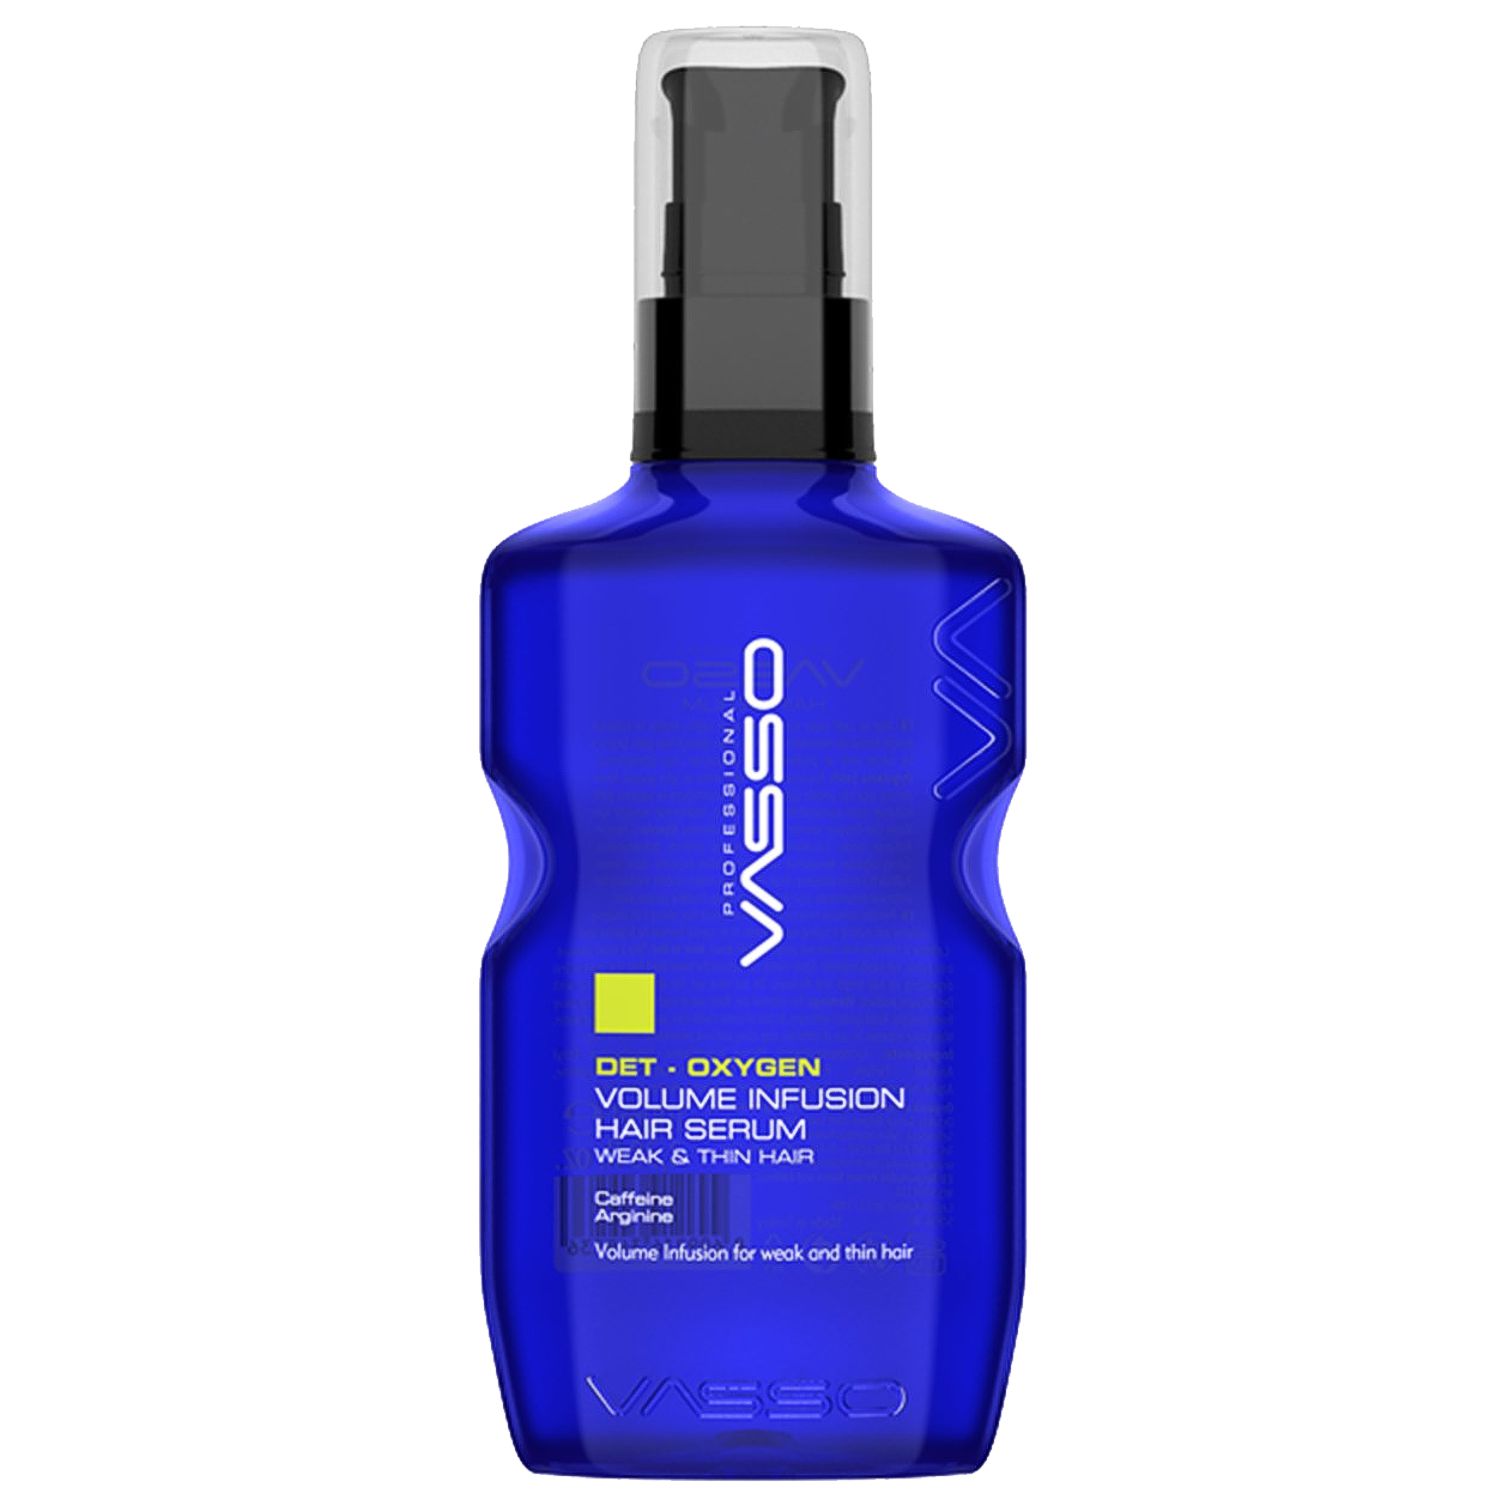 VASSO DET-OXYGEN Volume Infusion Hair Serum 200 ml